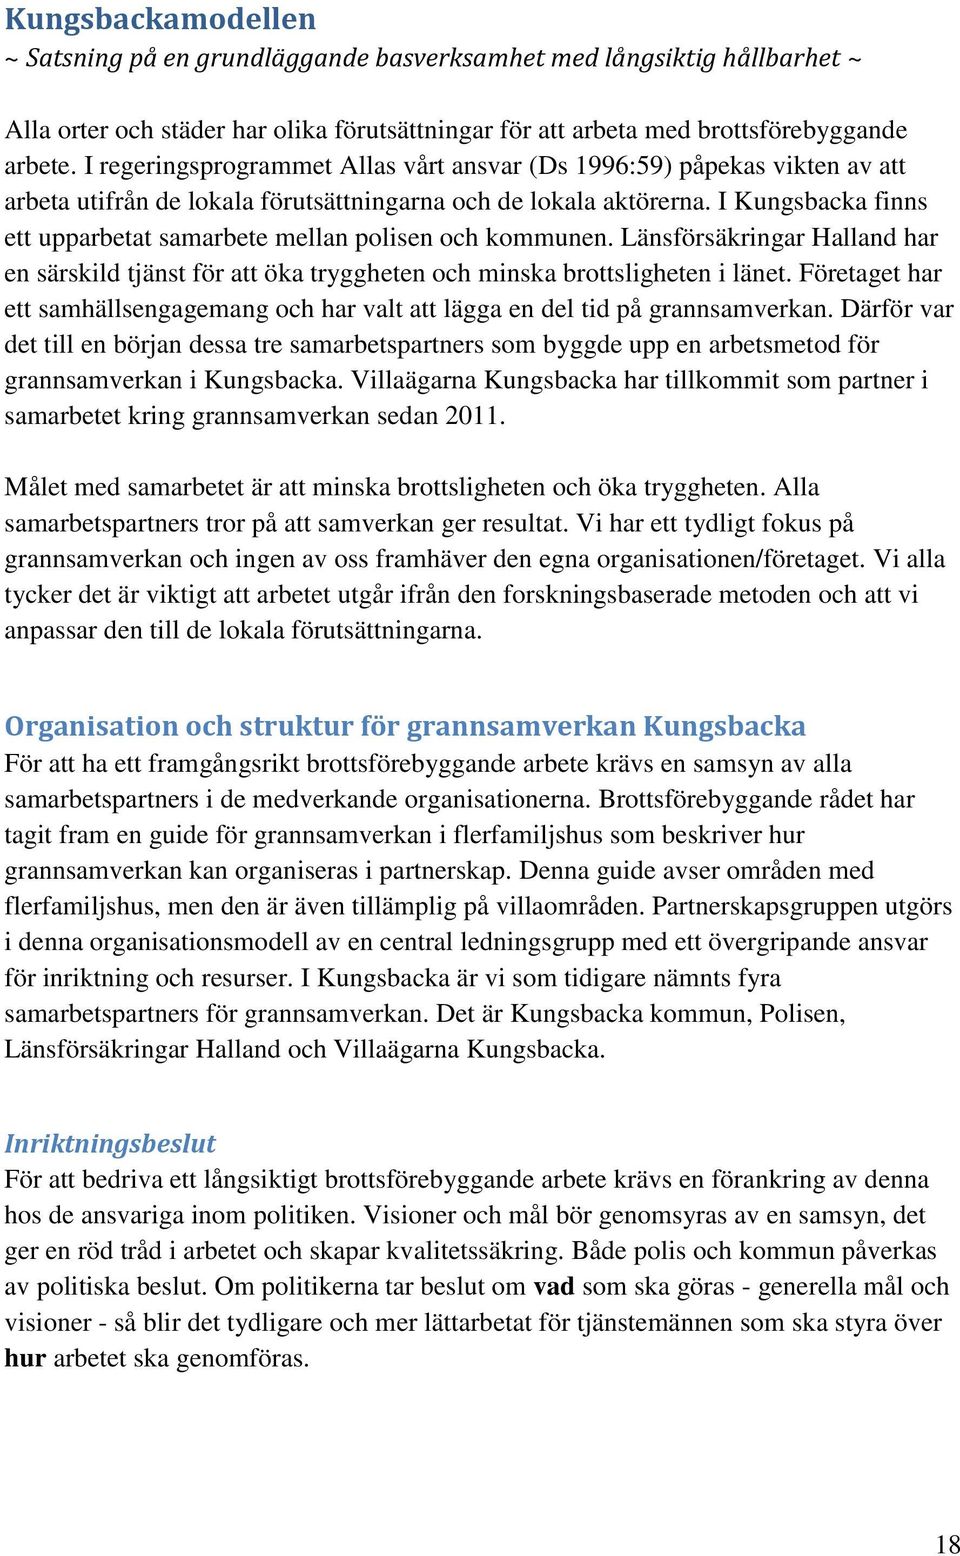 I Kungsbacka finns ett upparbetat samarbete mellan polisen och kommunen. Länsförsäkringar Halland har en särskild tjänst för att öka tryggheten och minska brottsligheten i länet.